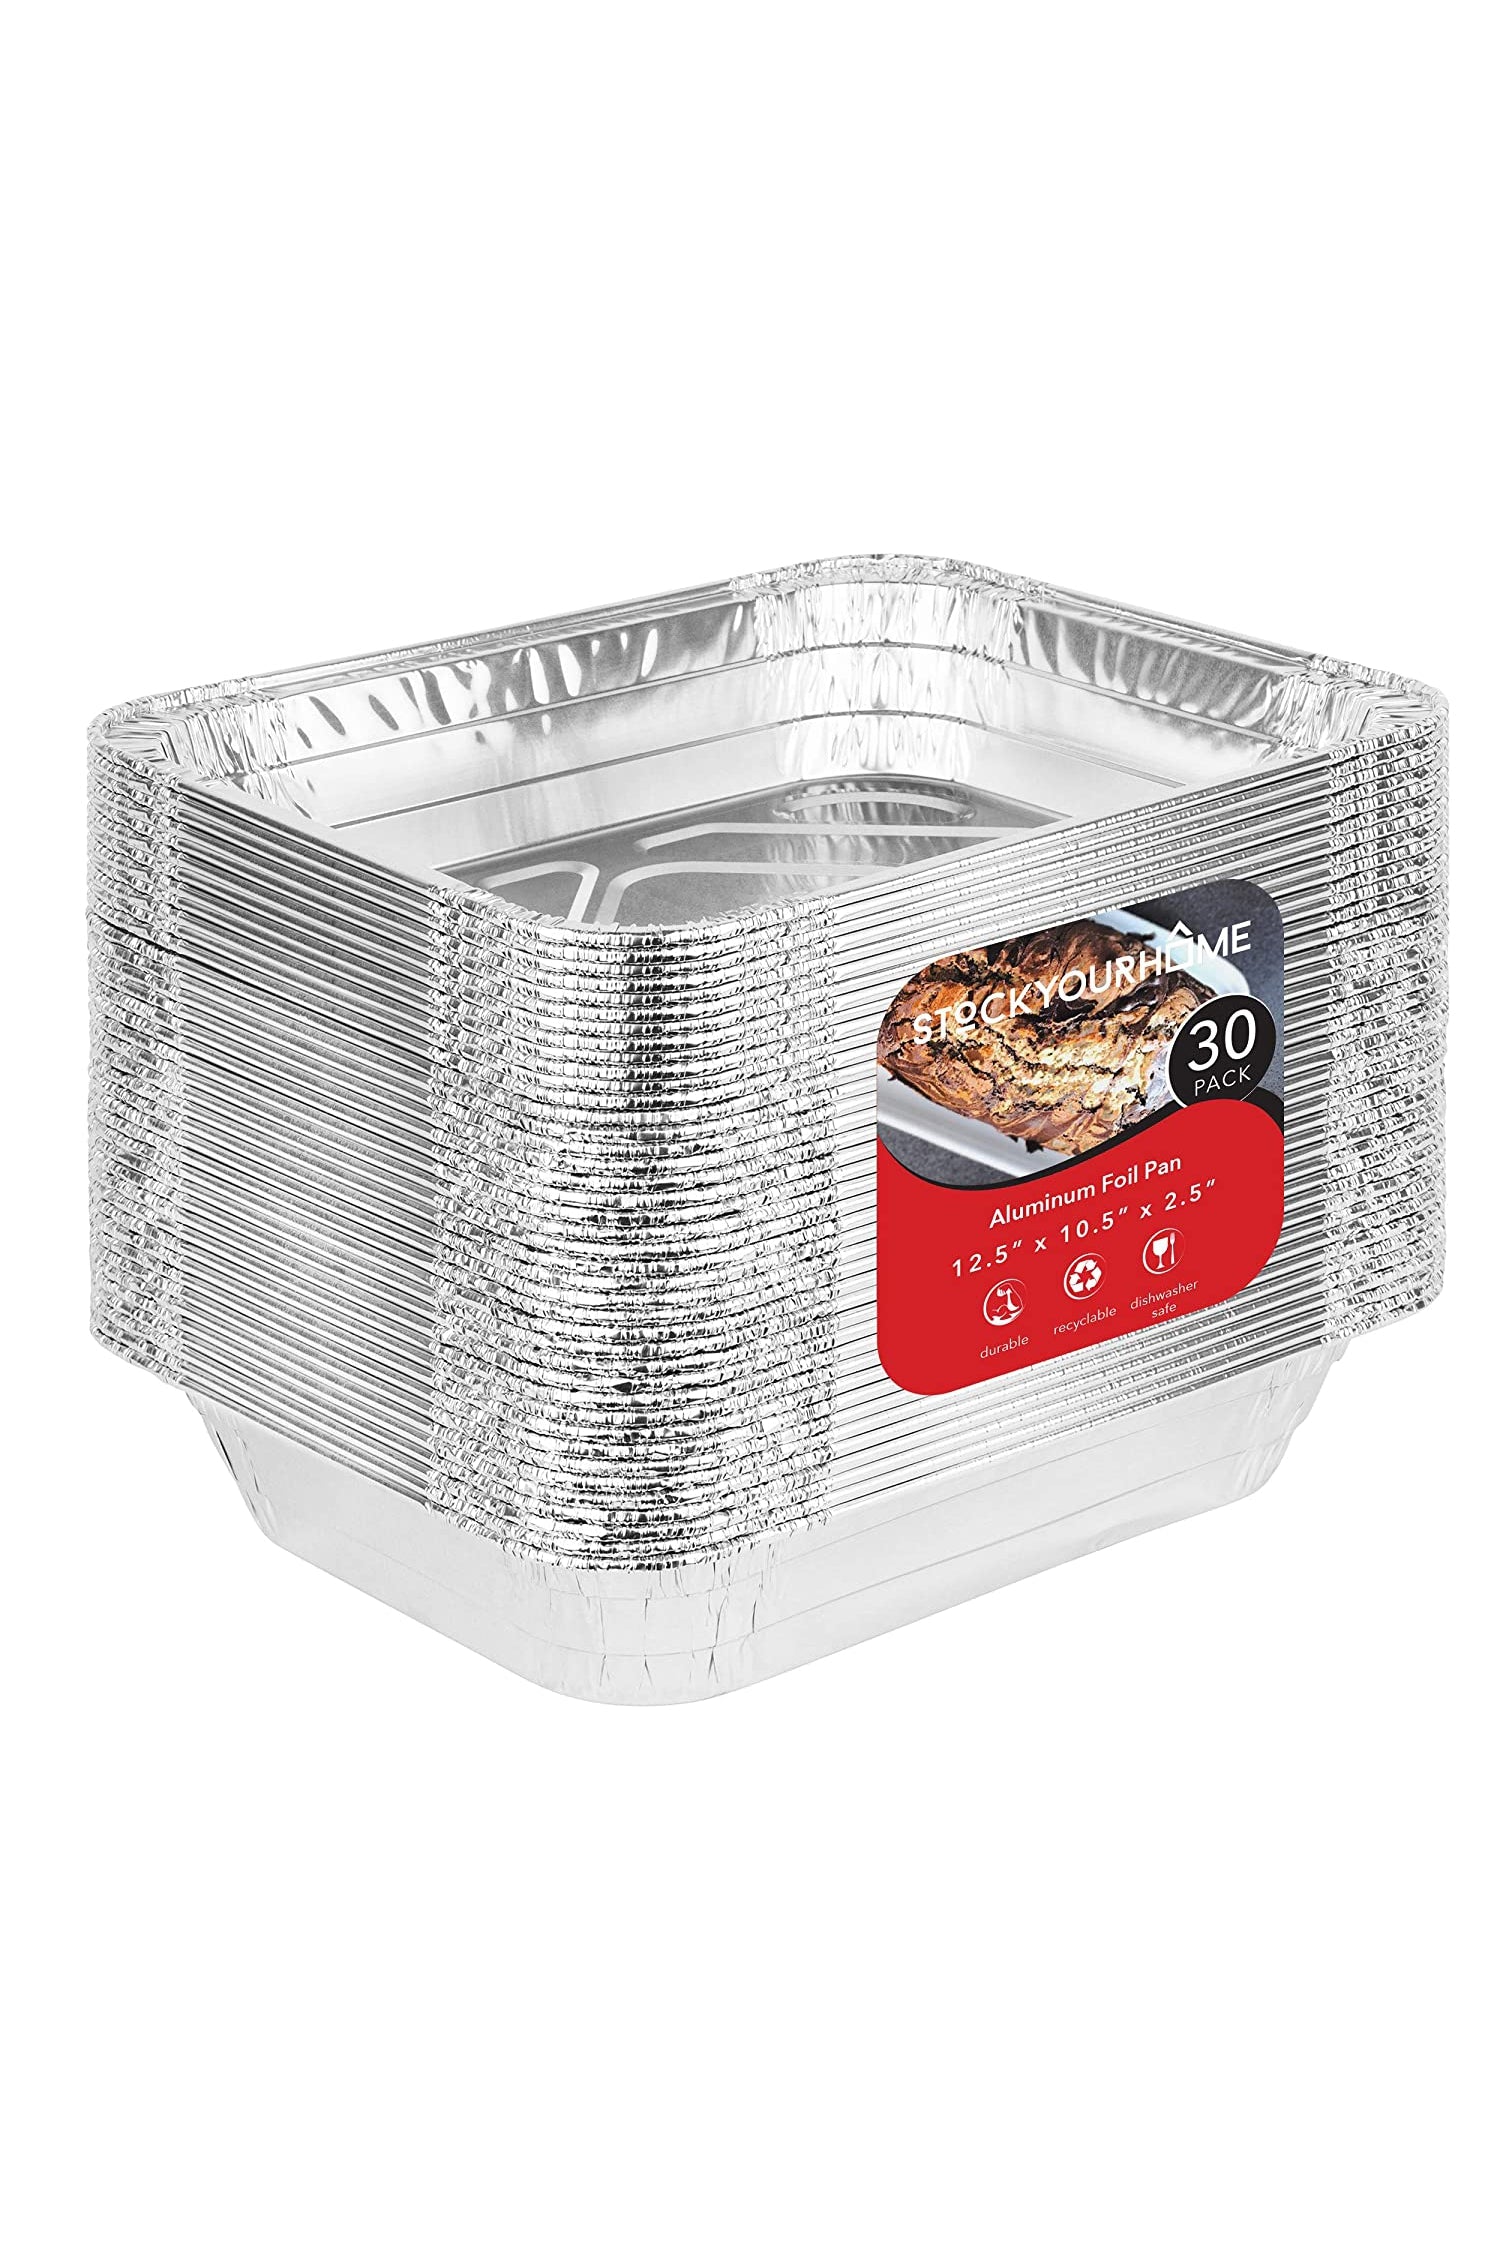 Aluminum Pans 9x13 Disposable Foil Pans (30 Pack) - Half Size